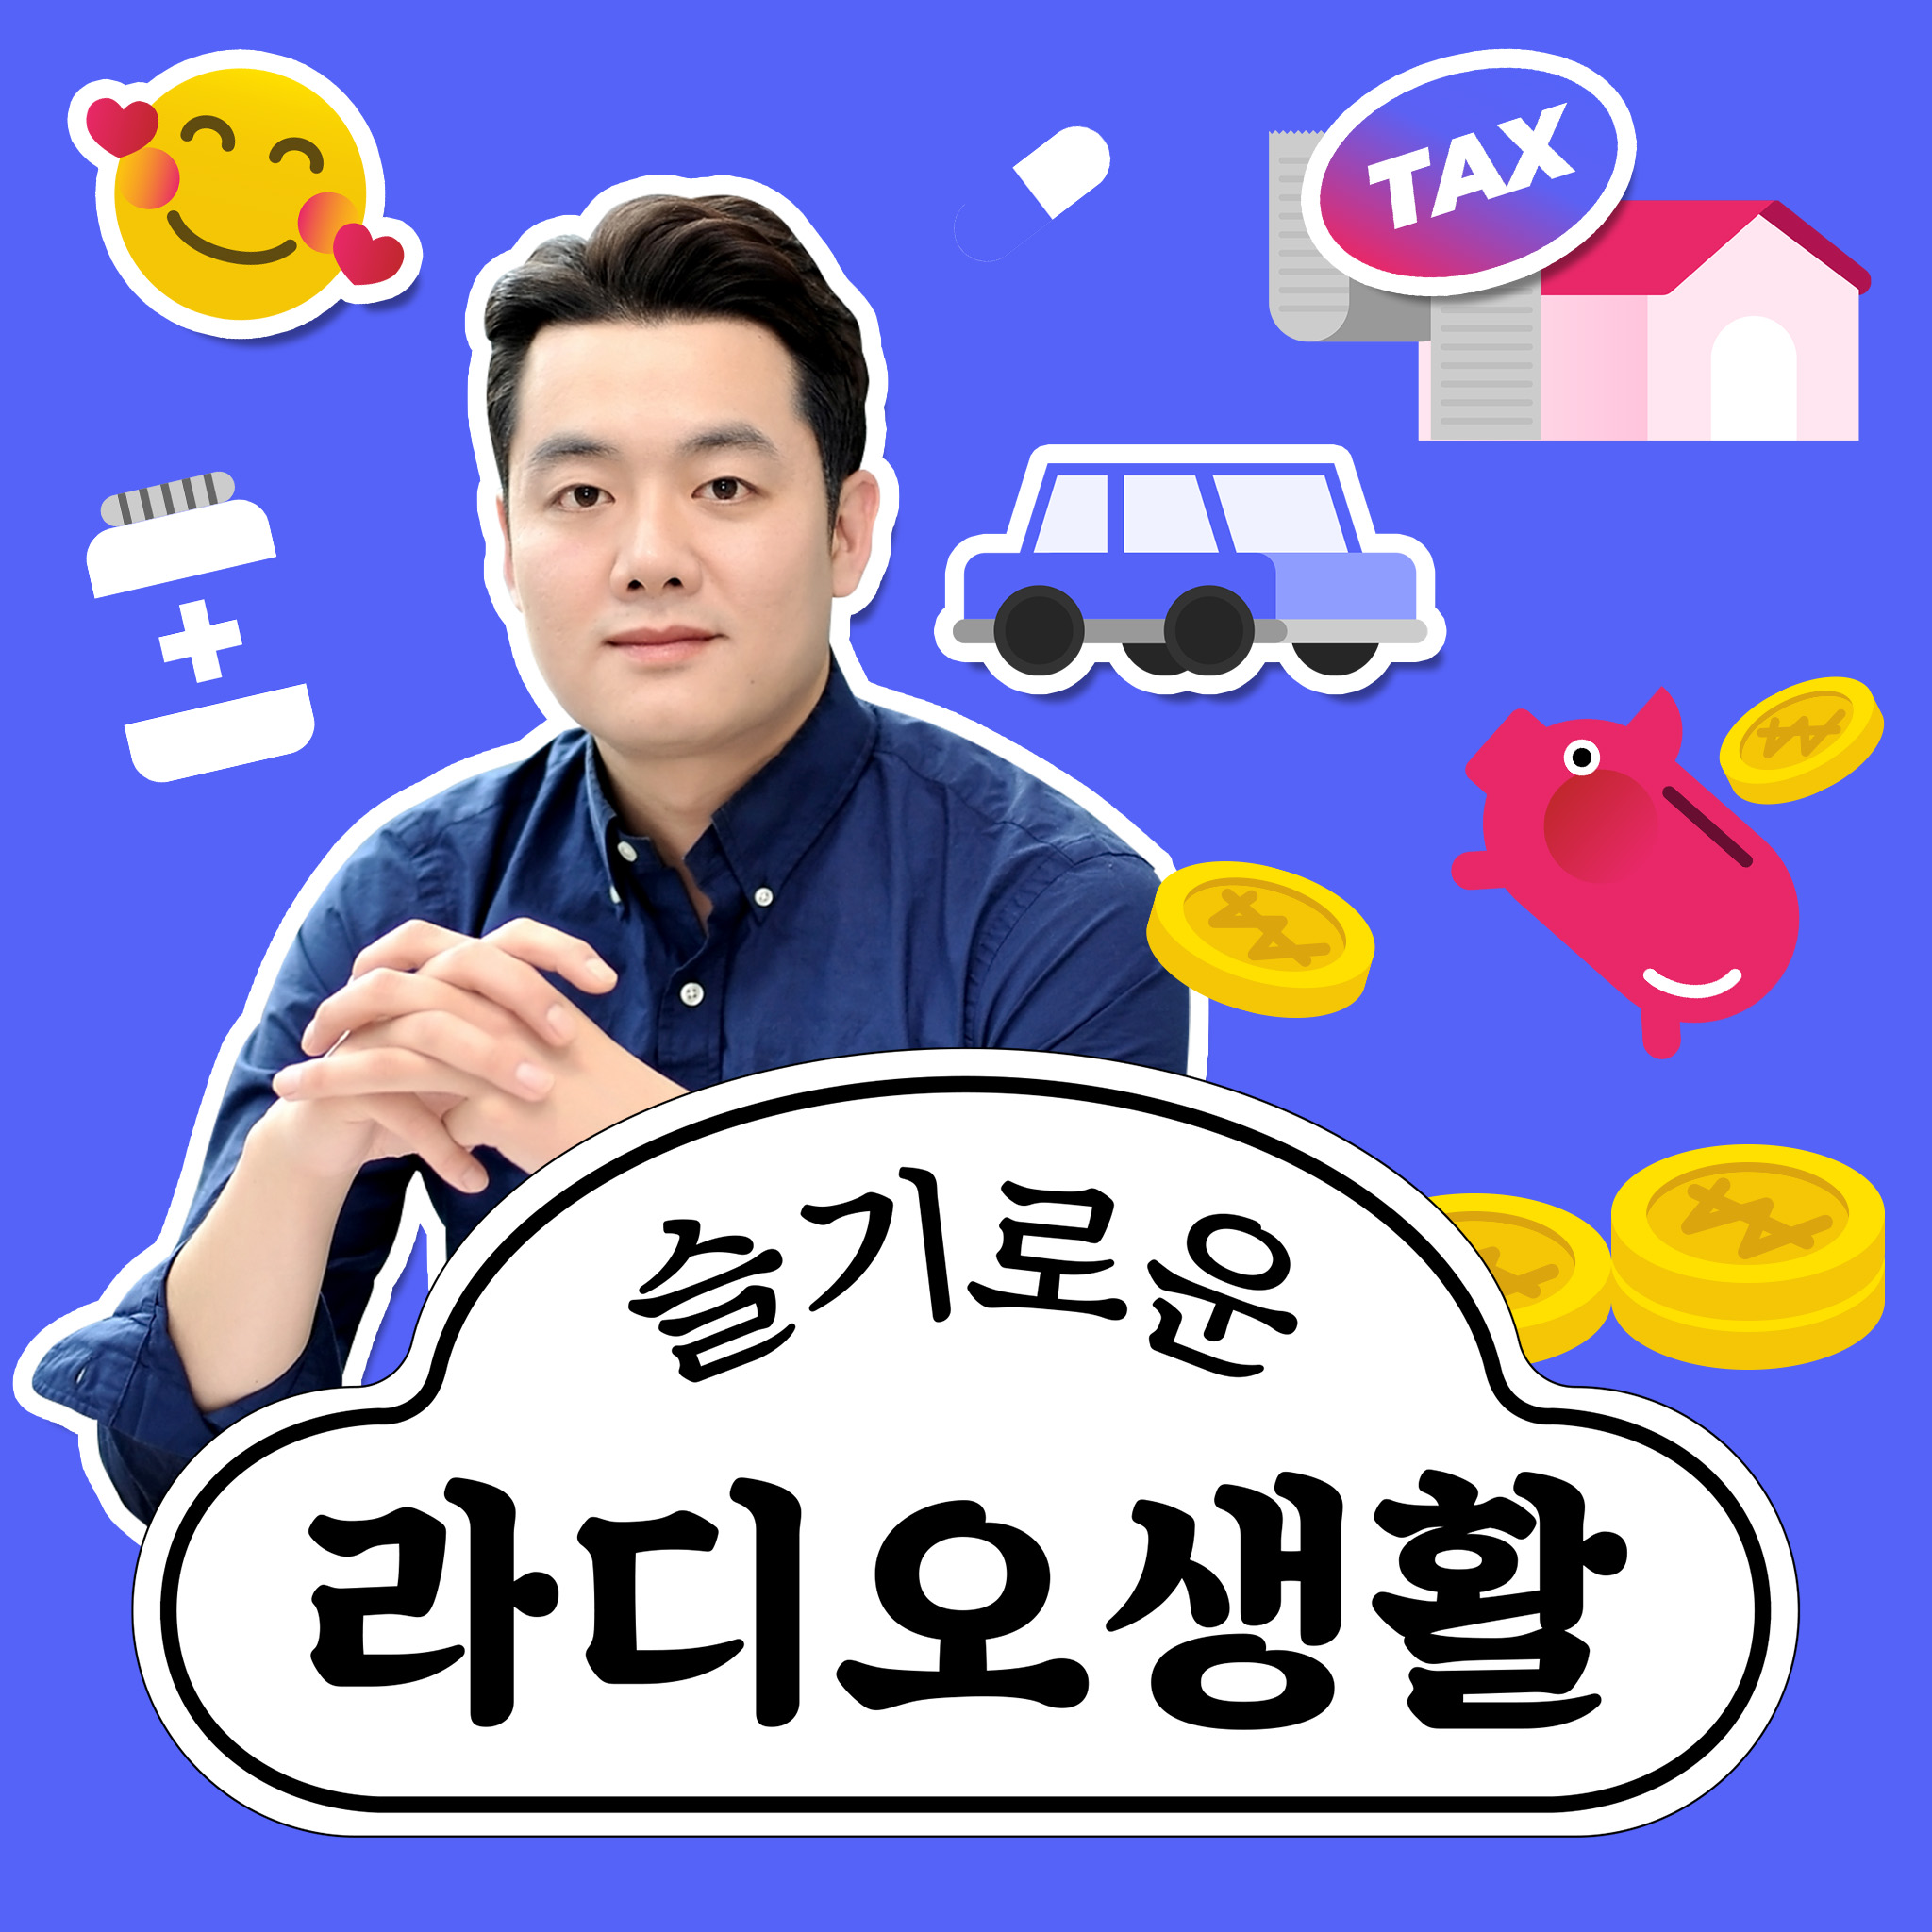 [슬기로운라디오] 인천 택시기사 확진... "불안 속에 손님 태우는 택시기사들"